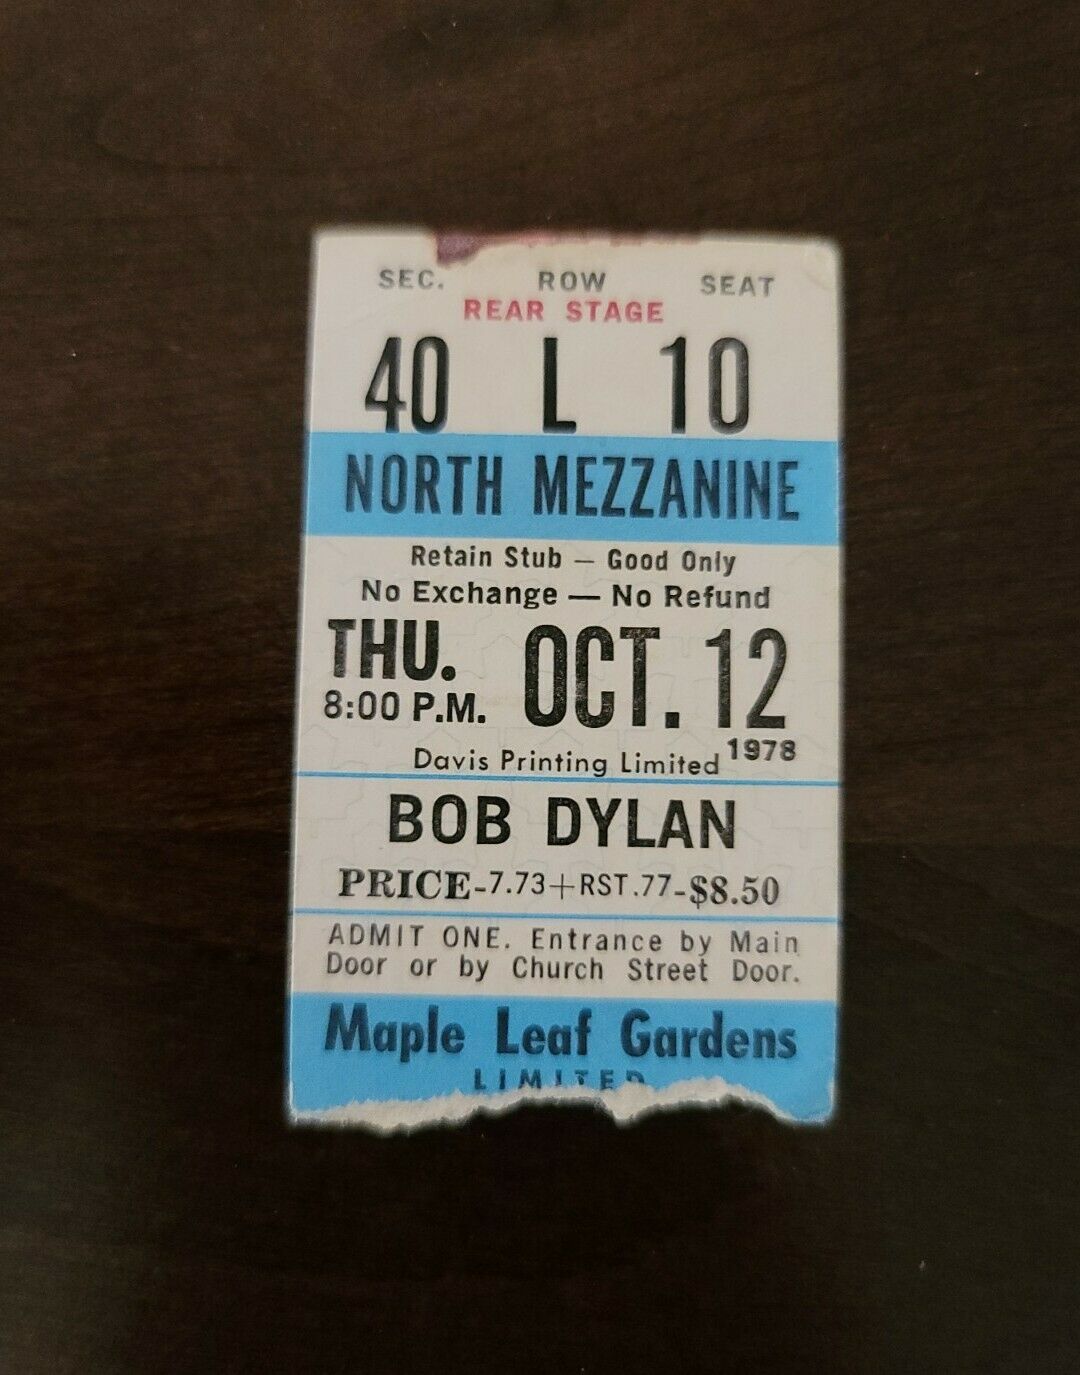 Bob Dylan 1978, Toronto Maple Leaf Gardens Original Vintage Concert Ticket Stub